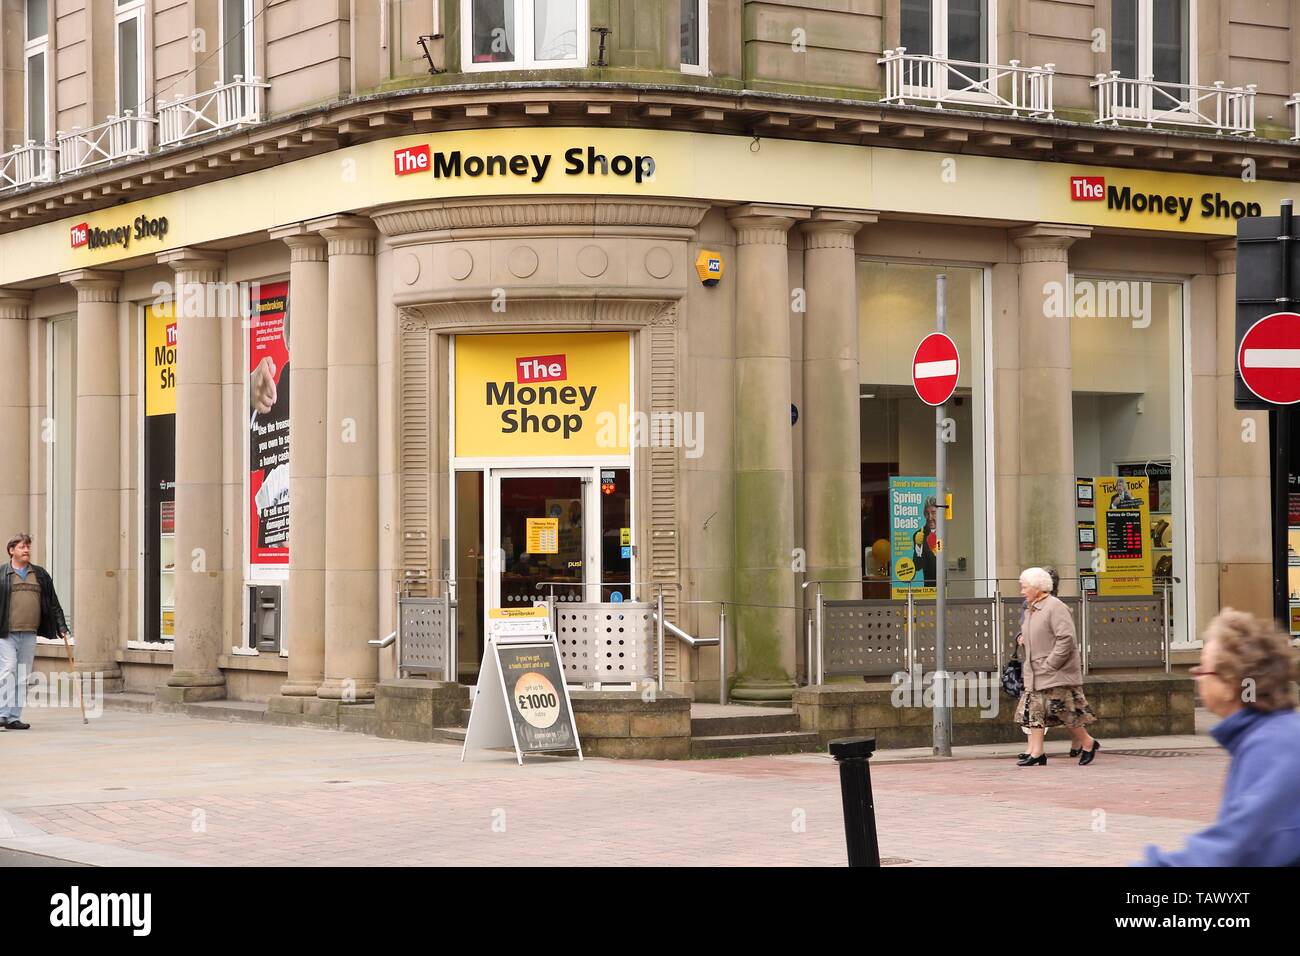 BOLTON, ANGLETERRE - 23 avril 2013 : La boutique de l'argent à Bolton, au Royaume-Uni. Boutique de l'argent fait partie de Dollar Financial Group, fournisseur de services financiers de détail. DFG em Banque D'Images